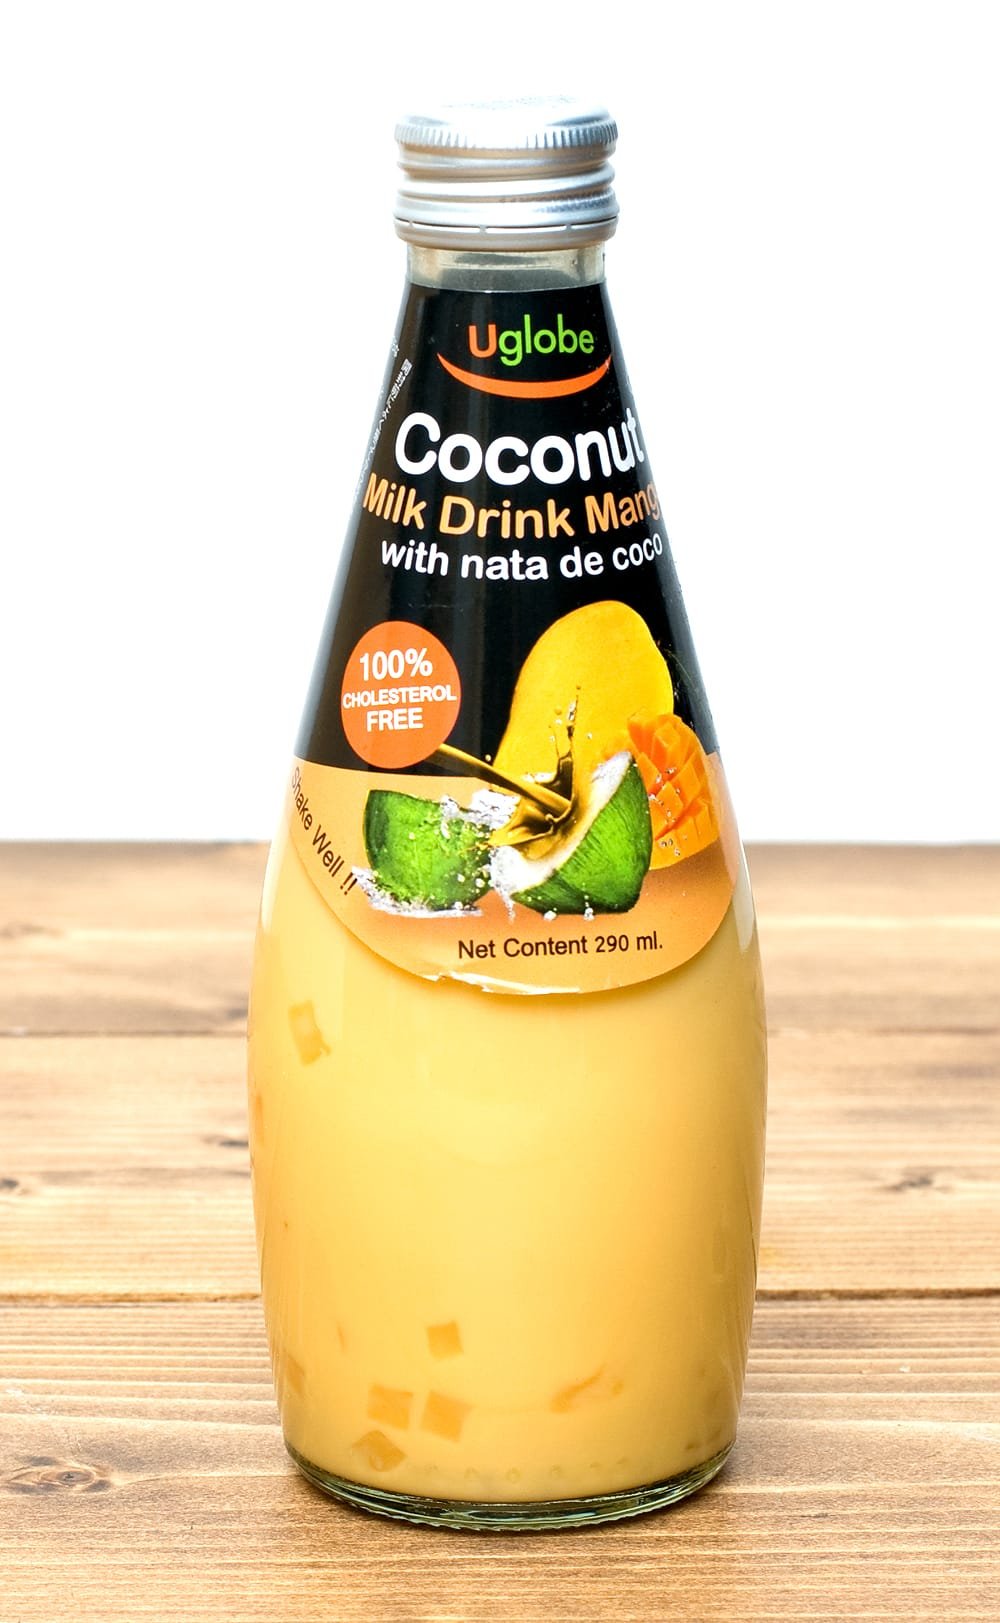 ココナッツミルクドリンク・ナタデココ入 マンゴー味 - Coconut Milk Drink With Nata de coco 【U globe】  の通販 - TIRAKITA.COM